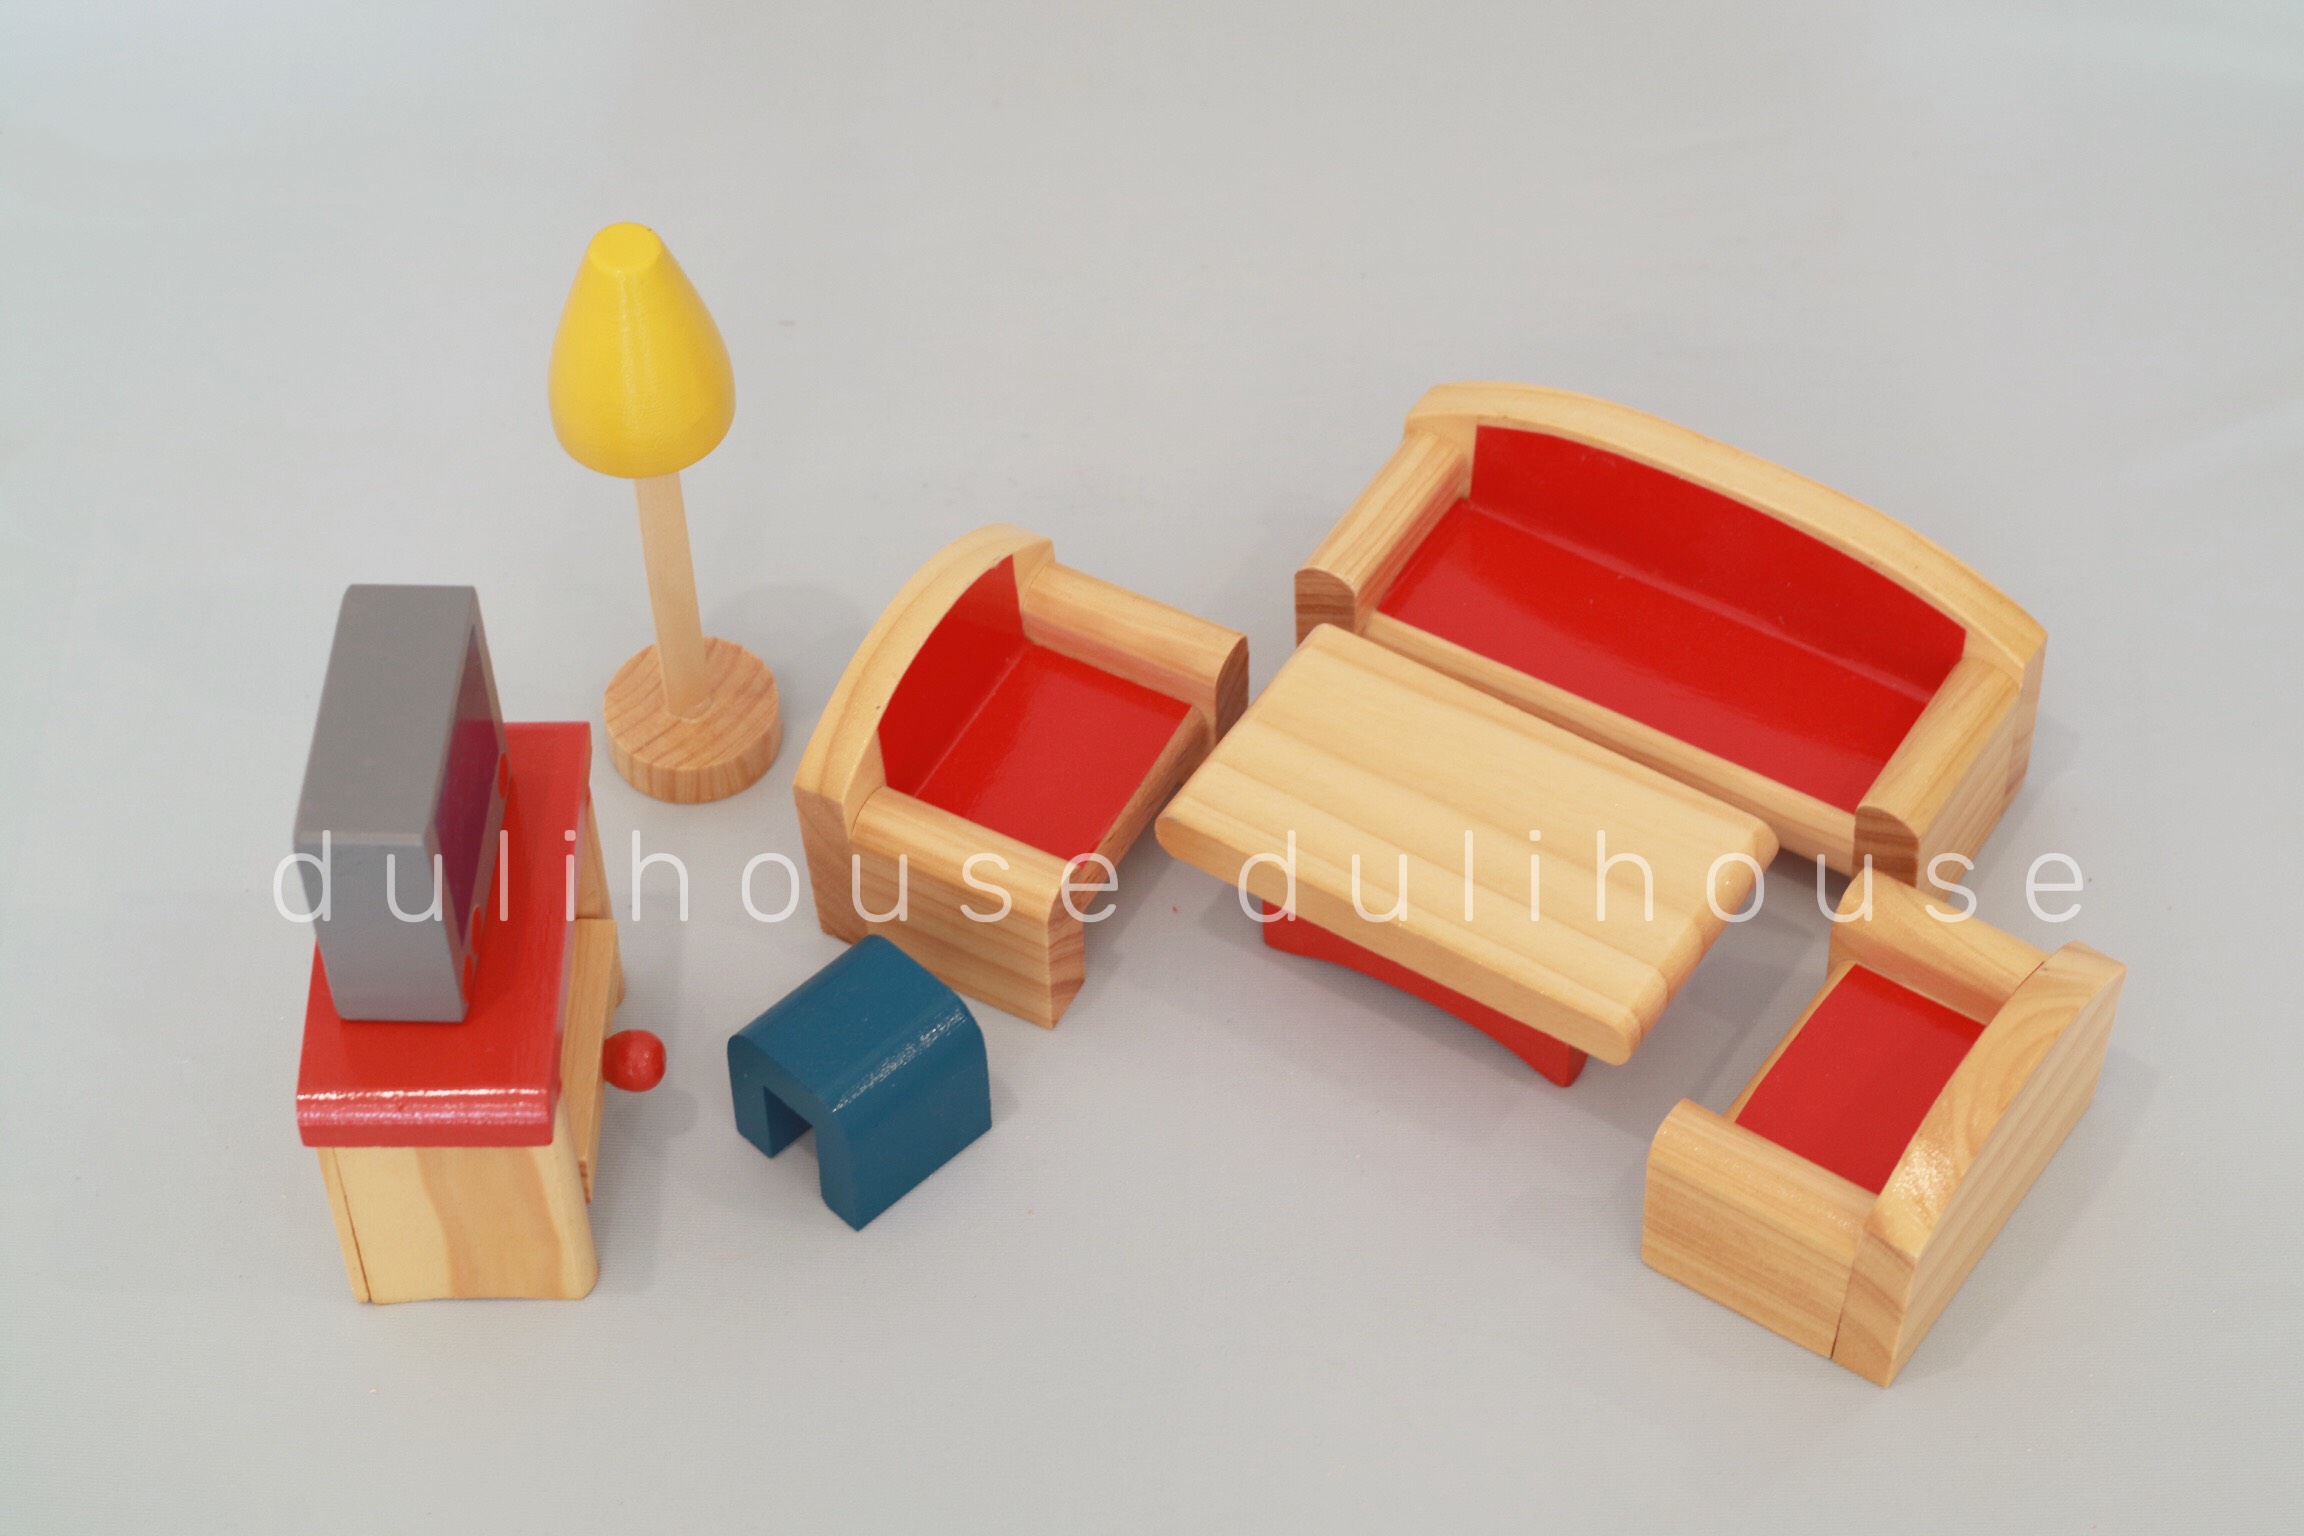 [TỪ 1 TUỔI] Bộ dụng cụ đồ chơi Gỗ - Phòng Khách - Rèn luyện khả năng sắp xếp và nhận biết đồ dùng cơ bản - Sản xuất tại Việt Nam